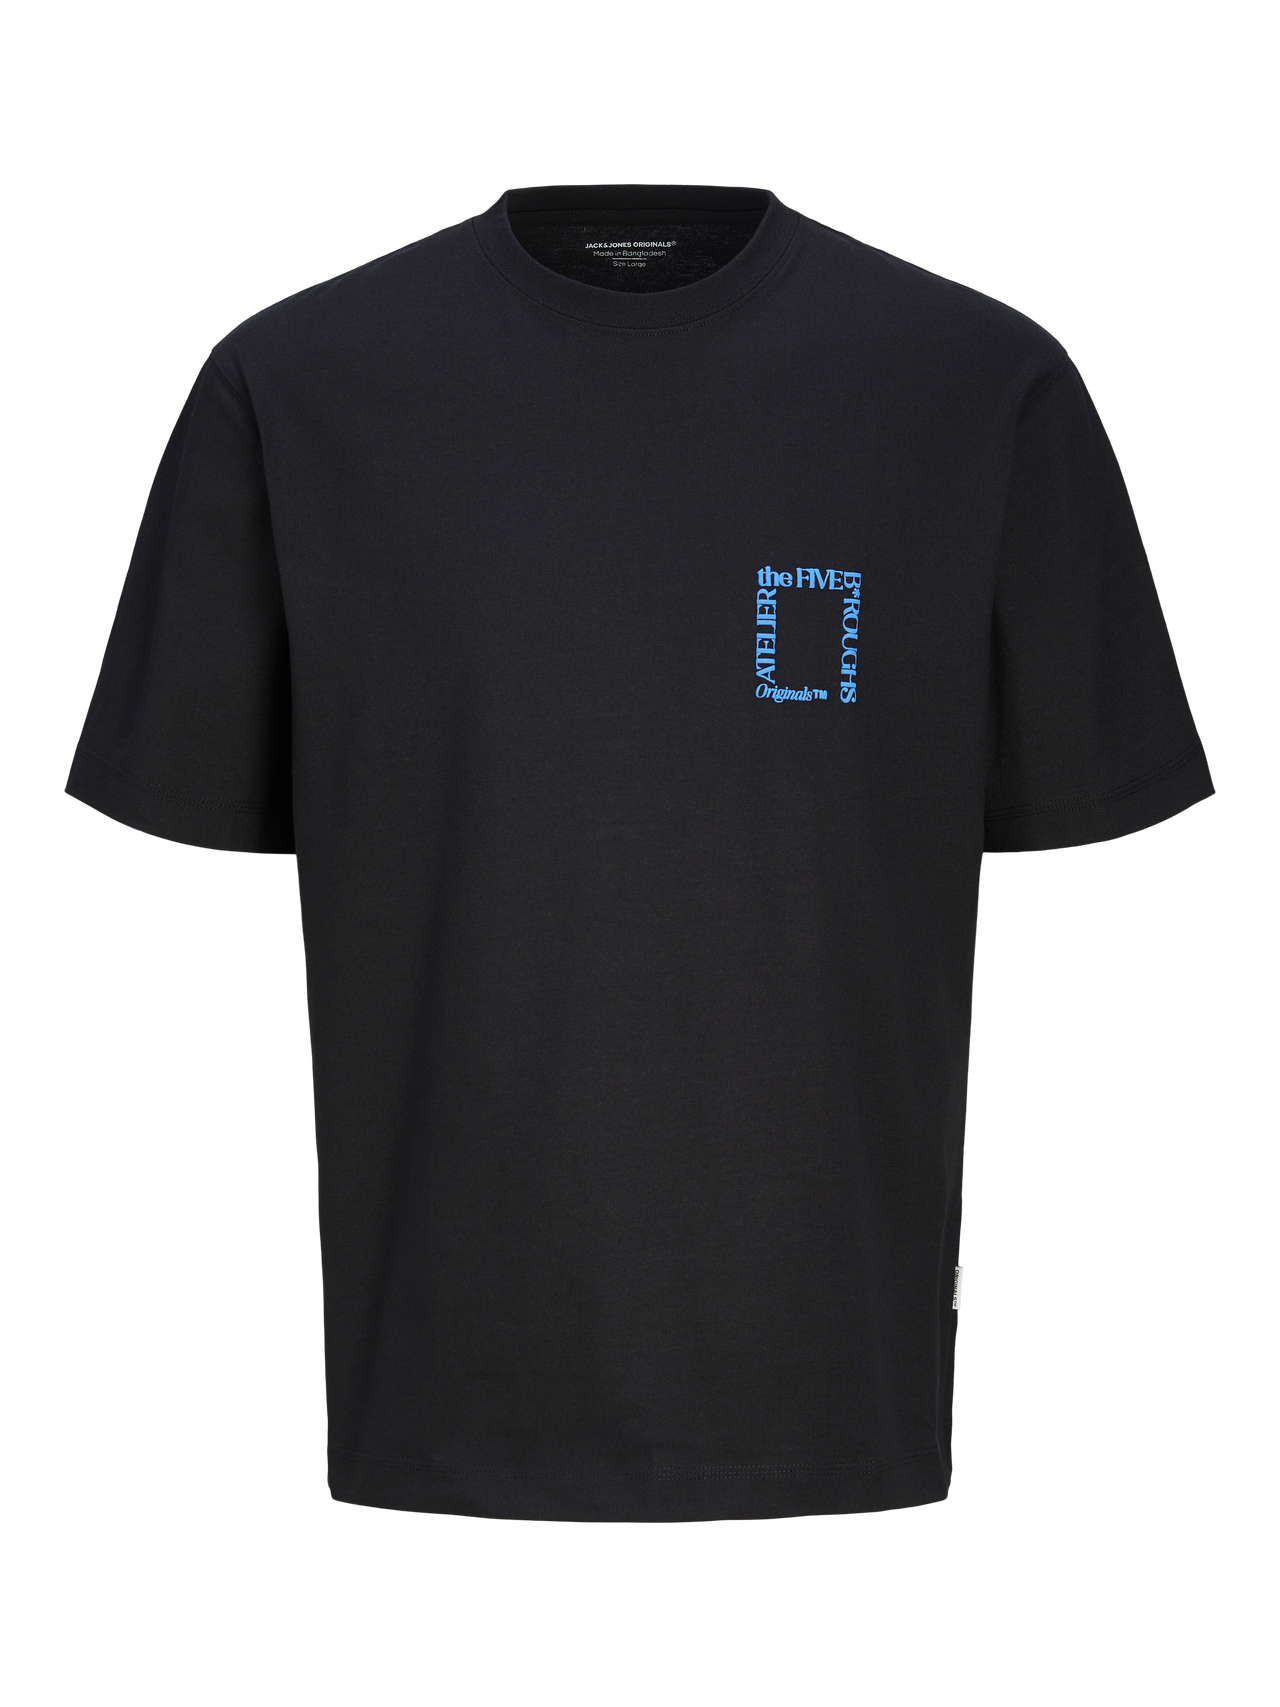 Jack & Jones Nadruk Okrągły dekolt T-shirt -Black - 12262503